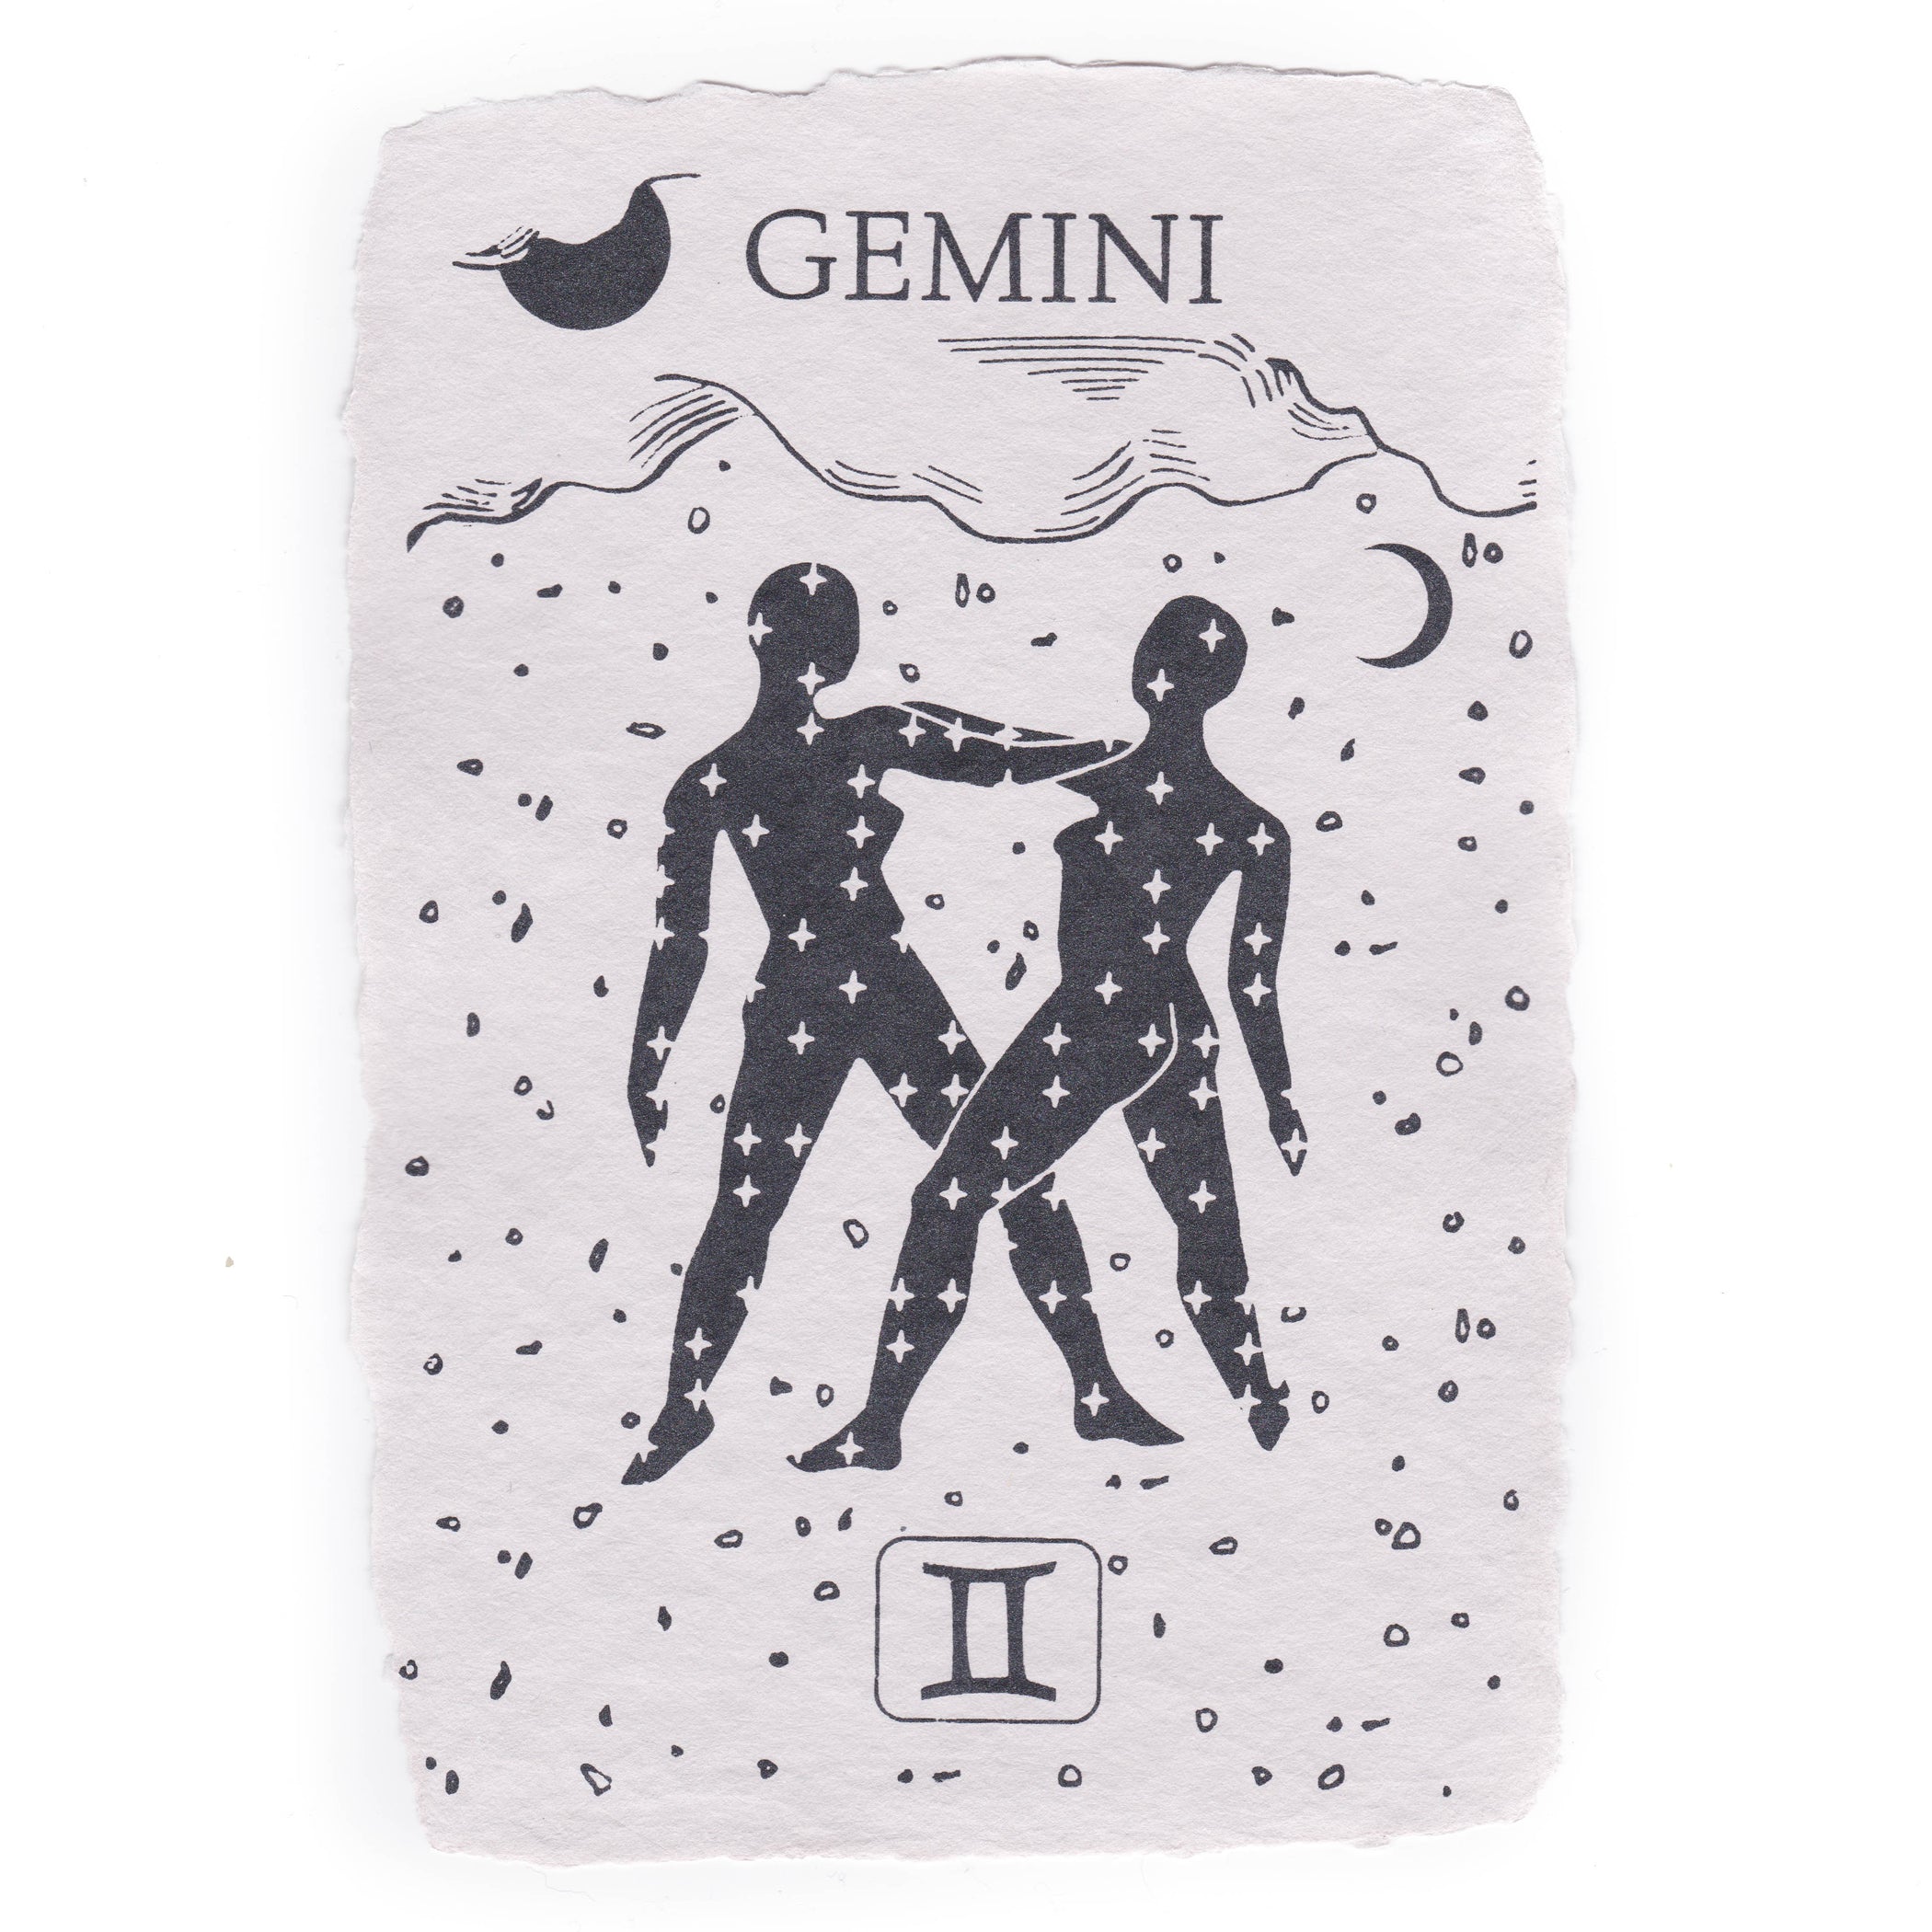 Gemini Notecard